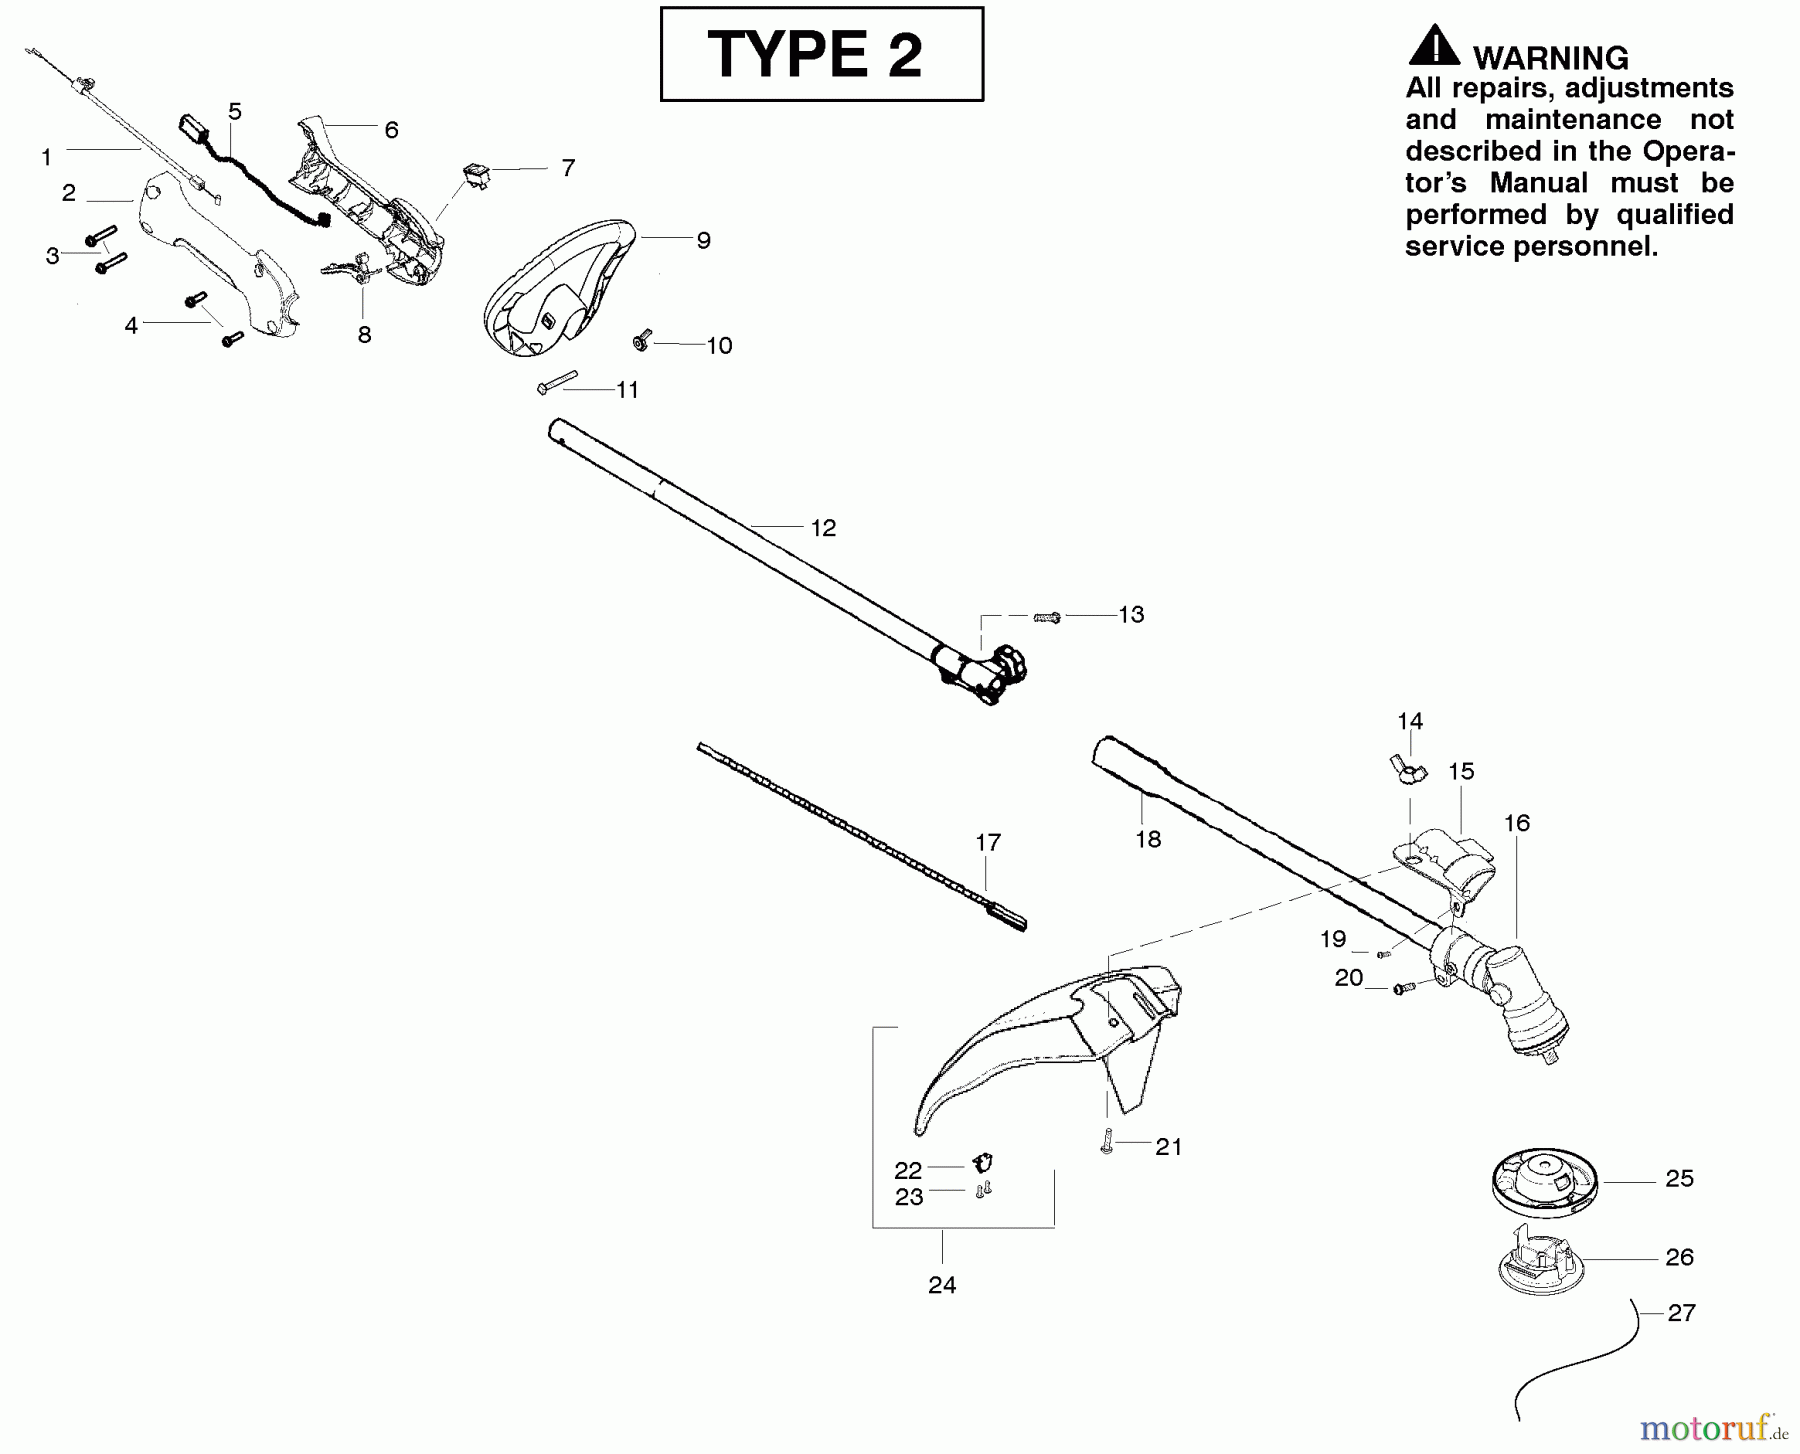  Poulan / Weed Eater Motorsensen, Trimmer SM705 (Type 2) - Poulan Pro String Trimmer Shaft & Handle Type 2